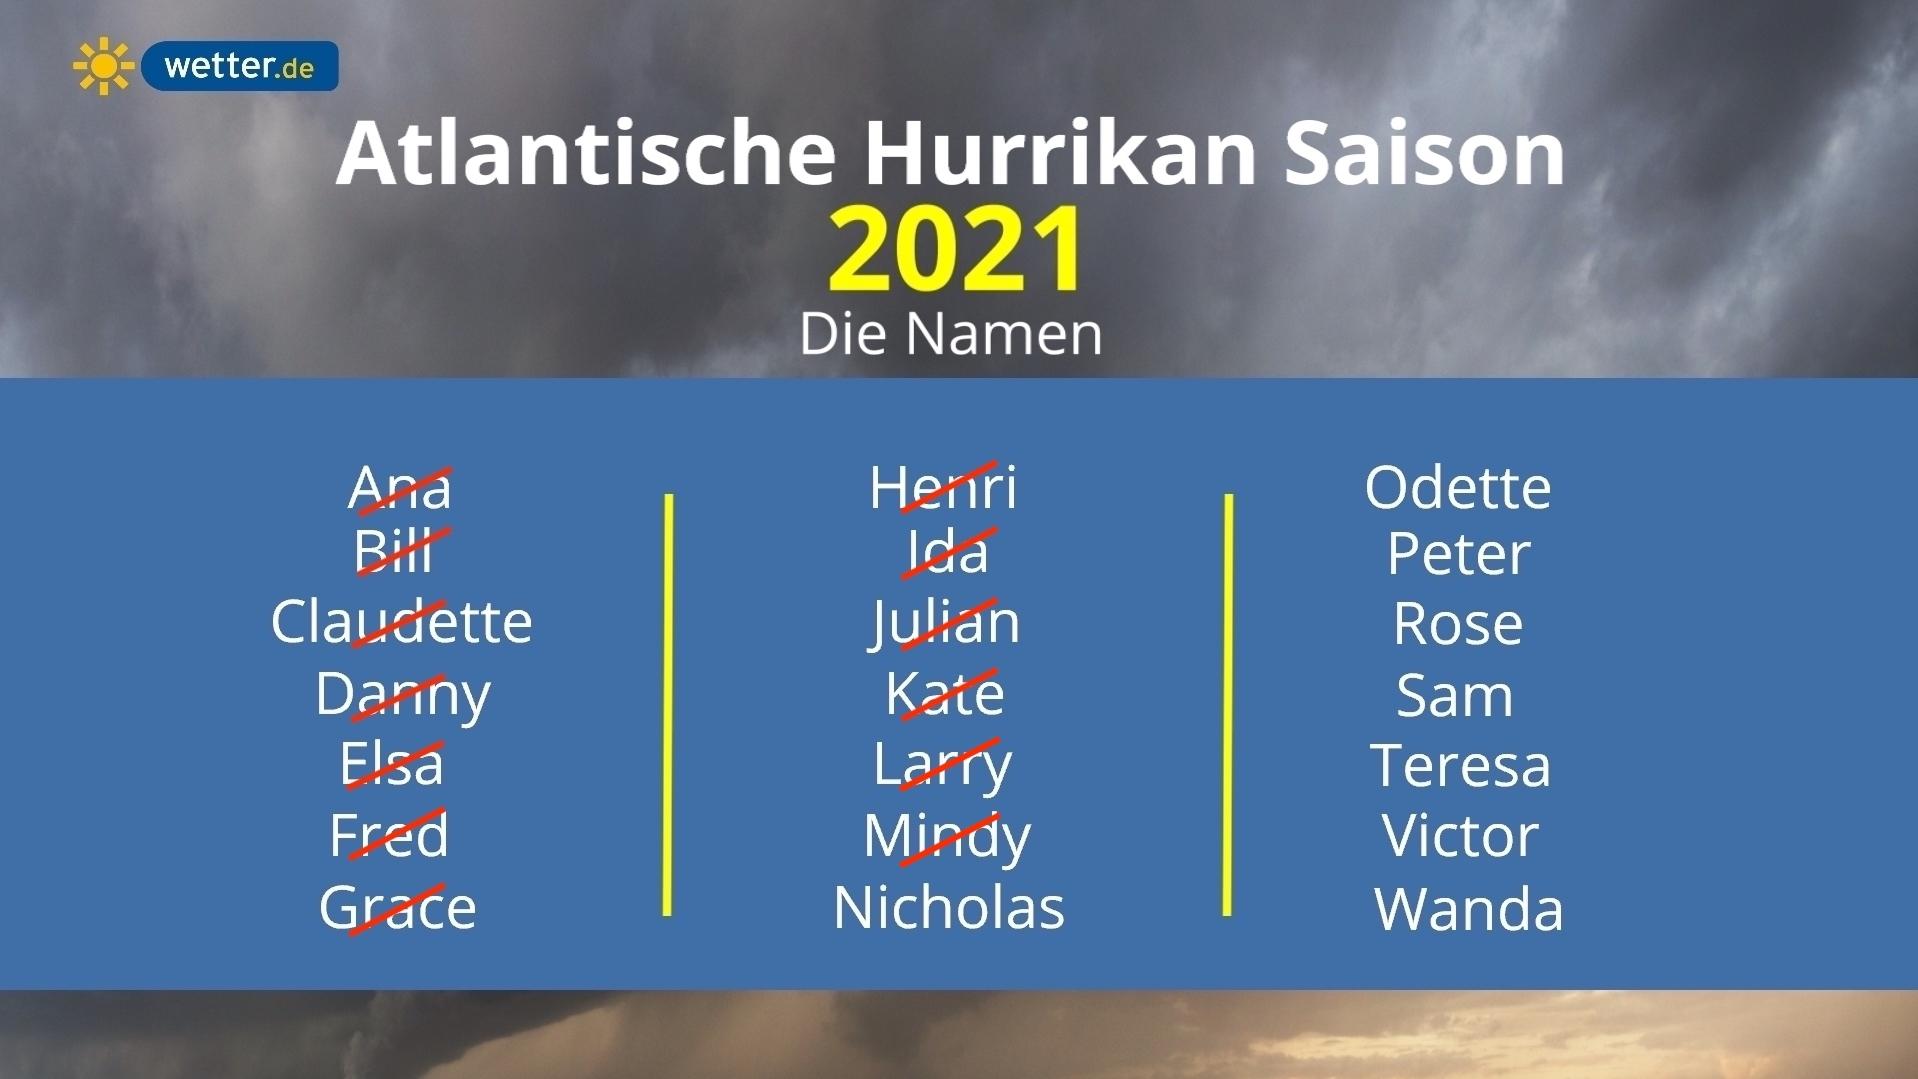 Die Namensliste der Atlantischen Hurrikan-Saison 2021: NICHOLAS ist bereits der 14. benannte Sturm dieses Jahres.